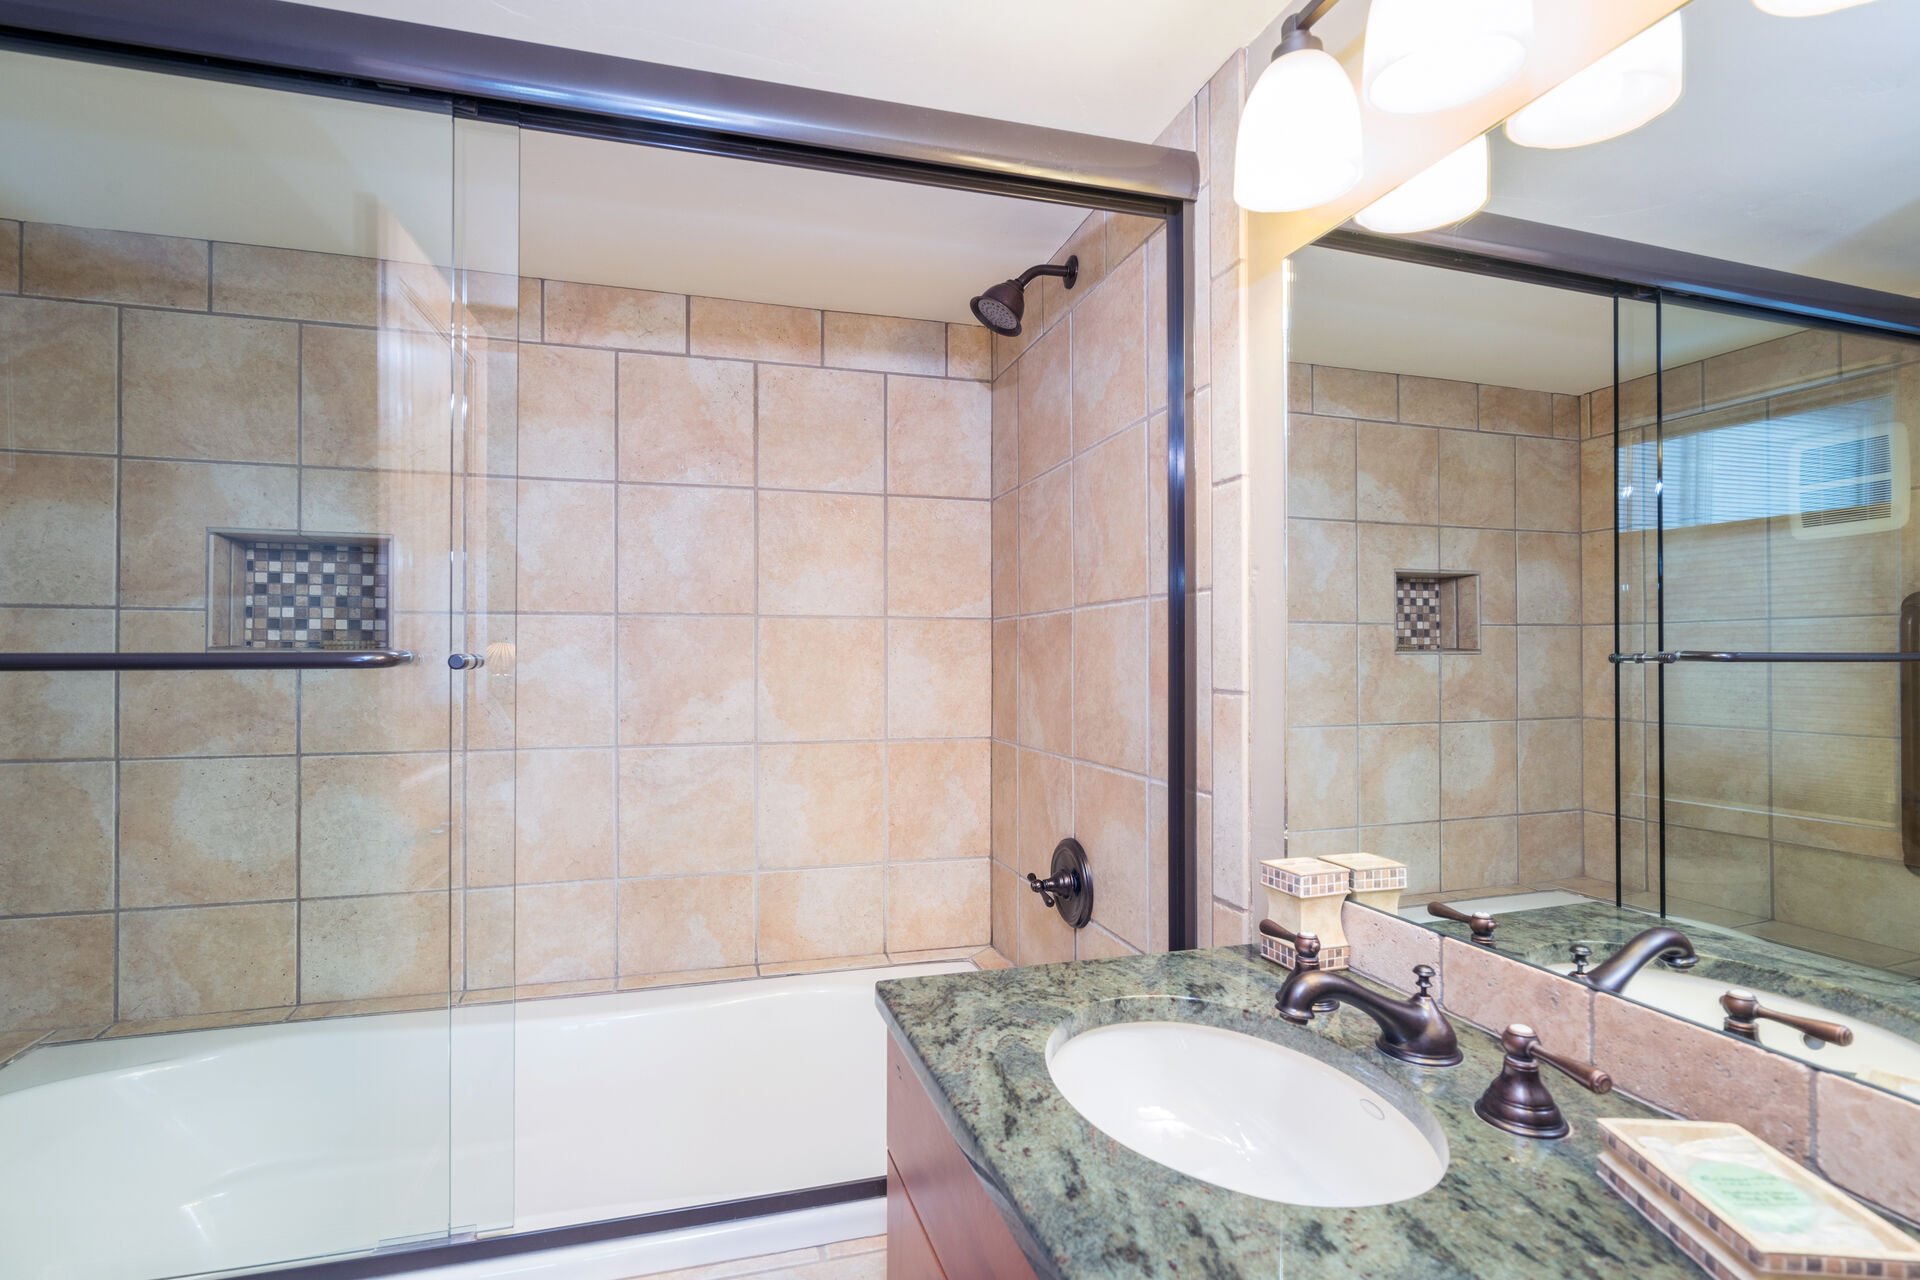 Bathroom with glass-door shower and vanity sink.